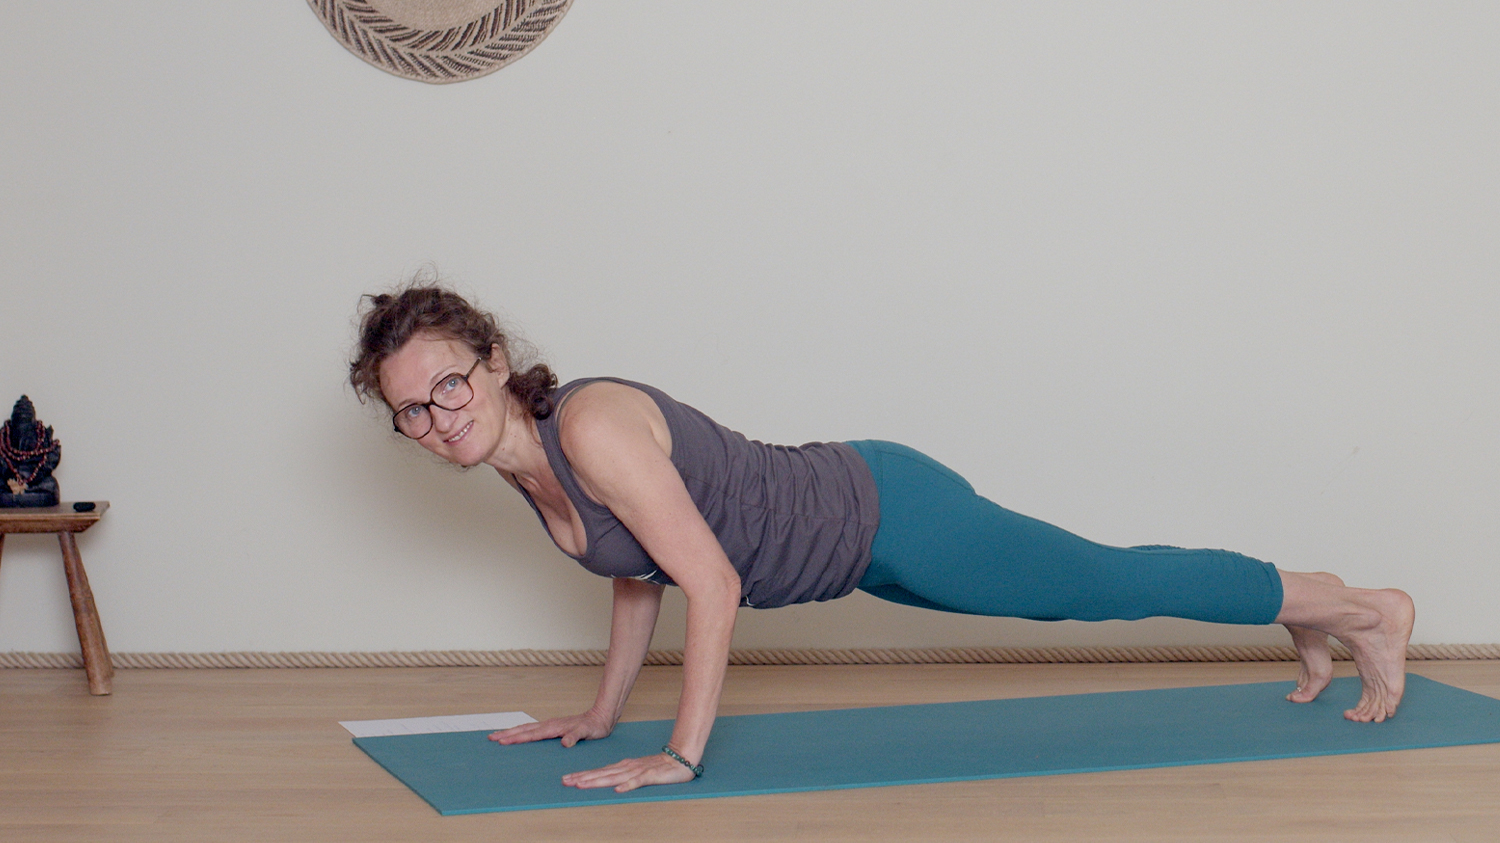 Renforcement musculaire du haut du corps - Intermédiaire | Cours de yoga en ligne avec Delphine Denis | Hatha Yoga dynamique